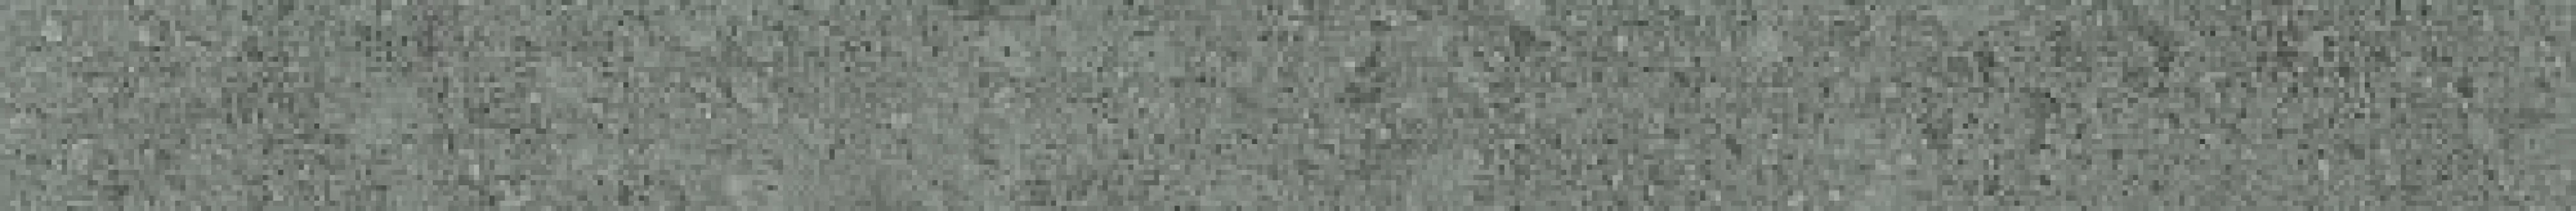 Италон Плинтус Дженезис Сатурн Грэй 7.2х60 610130002154